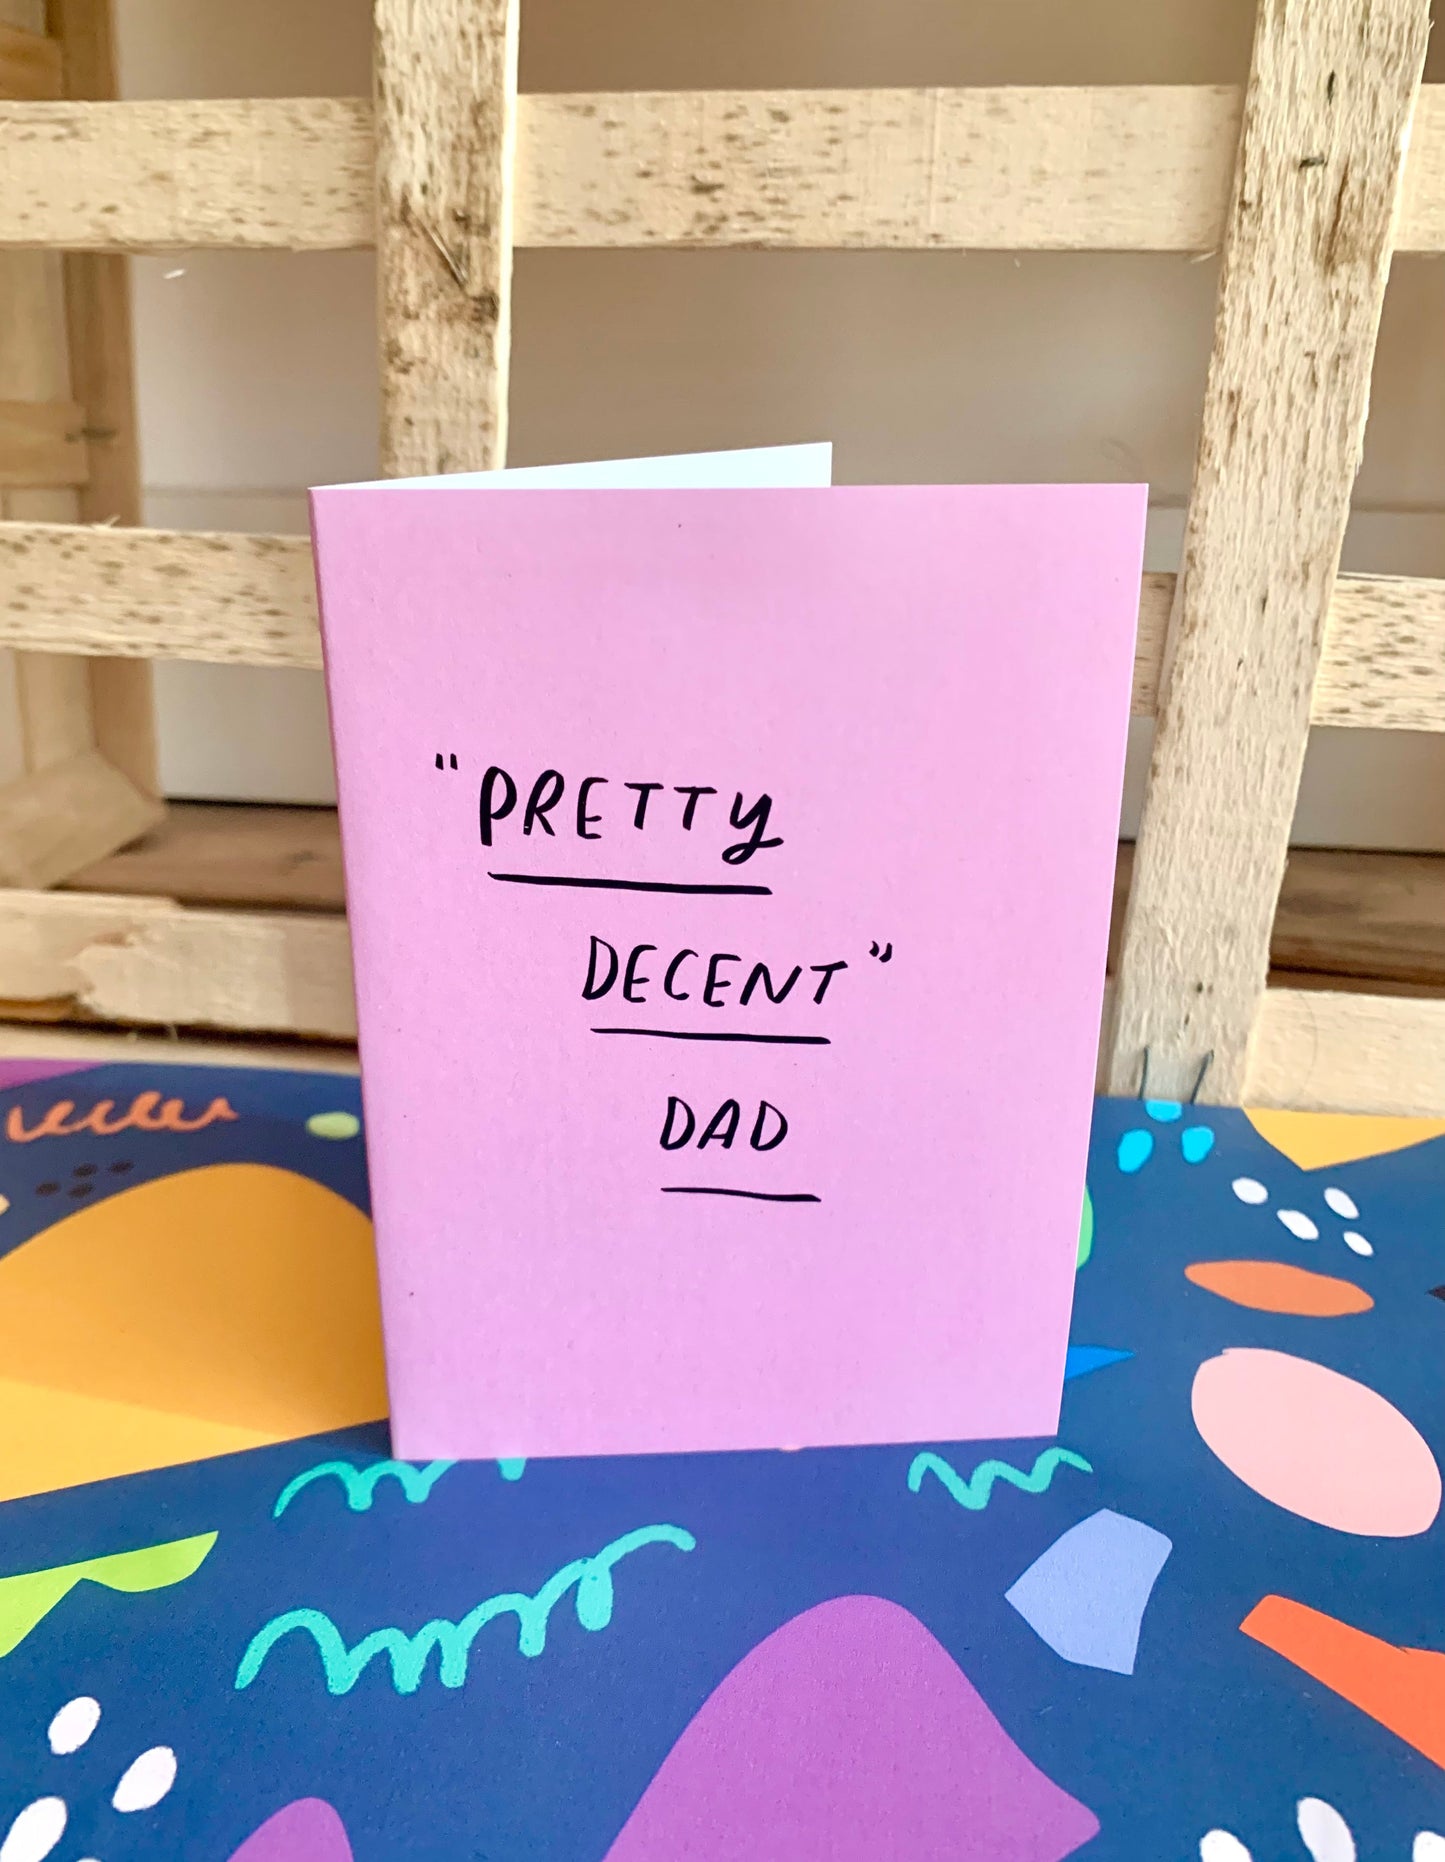 Pretty decent Dad greeting card